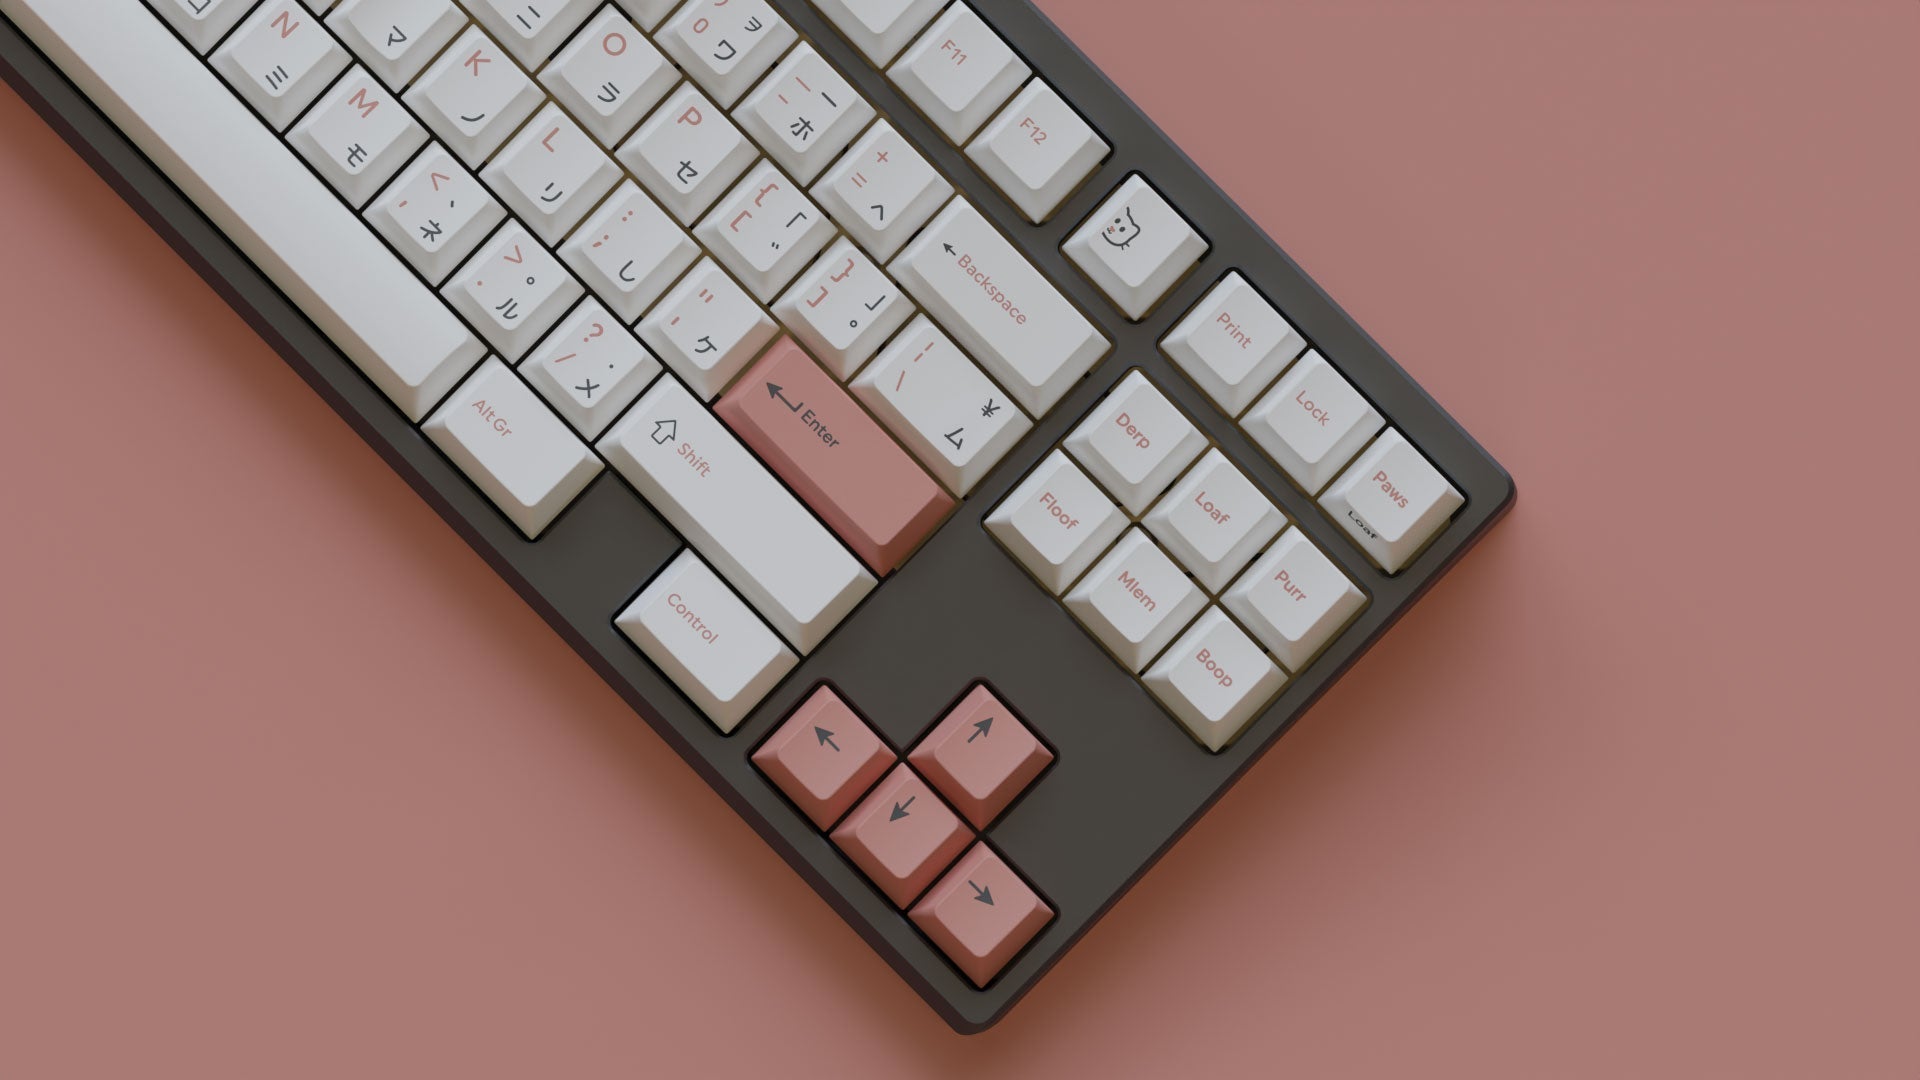 MW-Pono-Light-Keycaps-Mechanical-Keyboard-12